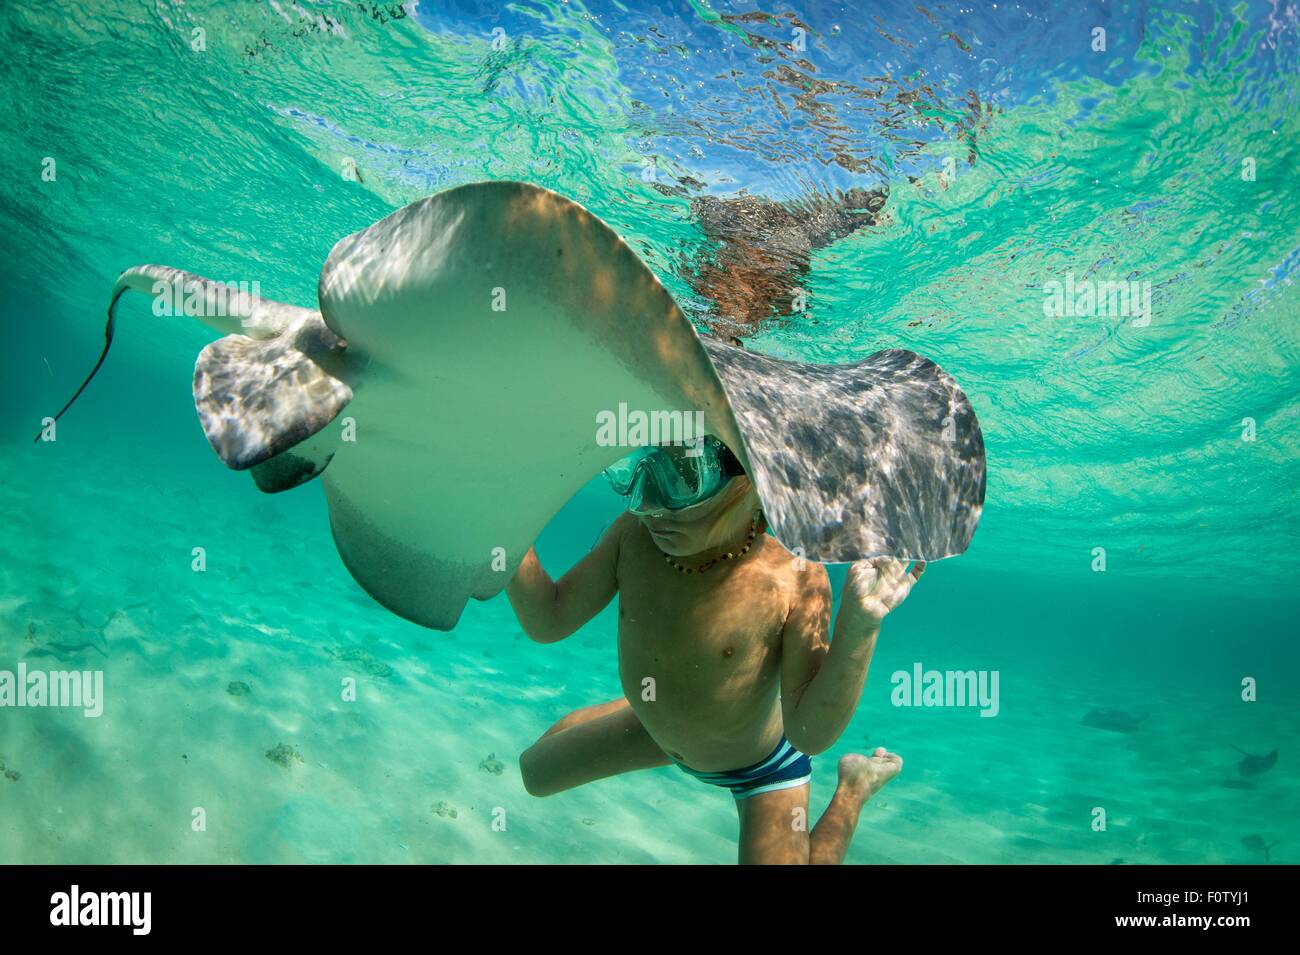 Boy with stingray, Bimini, Bahamas Stock Photo